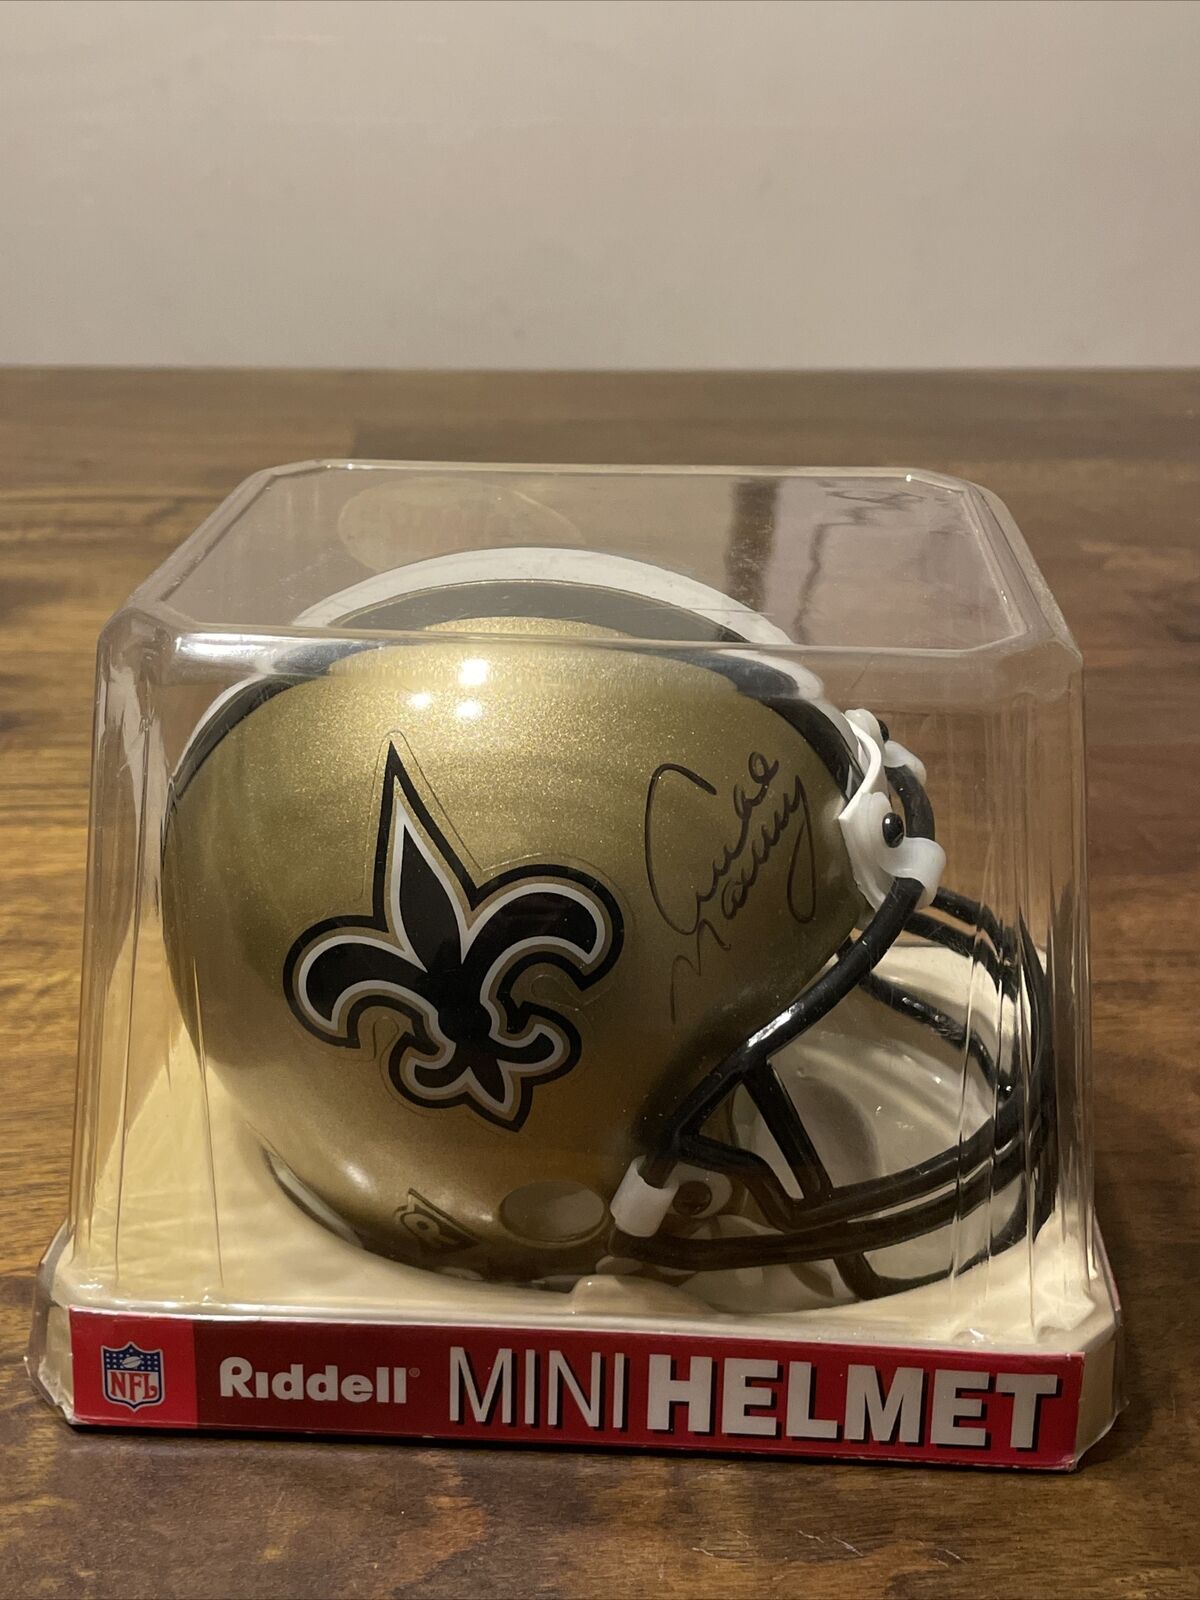 100% Authentic Archie Manning Signed Mini Helmet New Orleans Saints